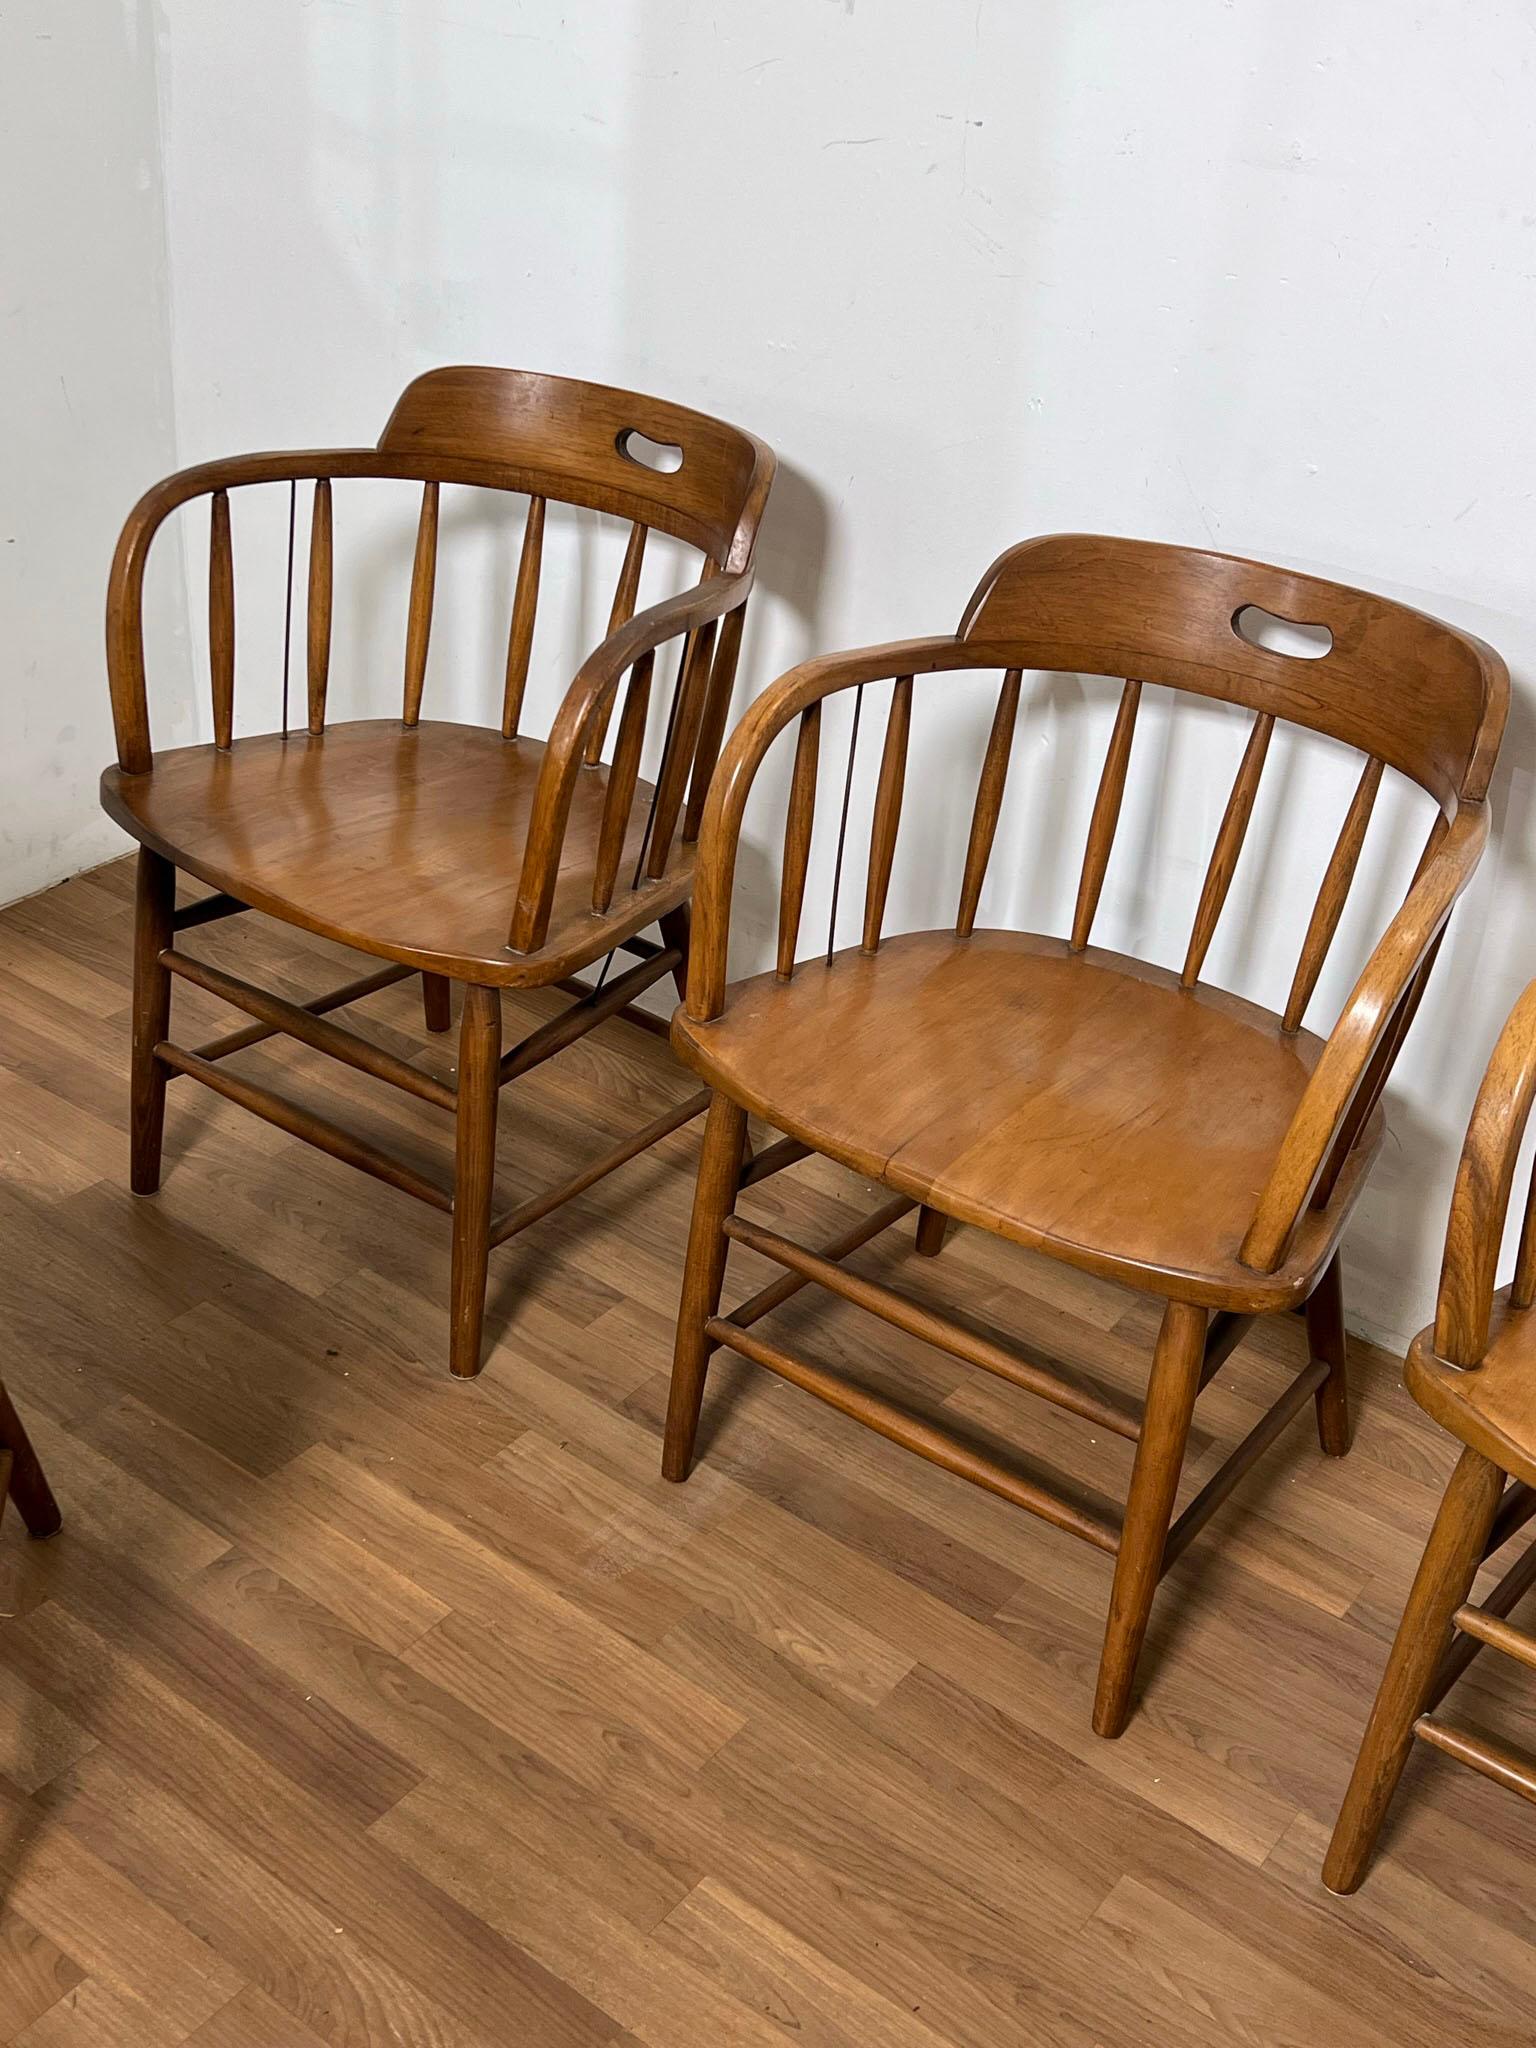 Un ensemble de huit chaises de caserne de pompiers de style rustique chic par la Boling chair Company de High Point, A.I.C., vers les années 1940. Ces Windsor à dossier en tonneau sont suffisamment charmants pour avoir été choisis par Georgia